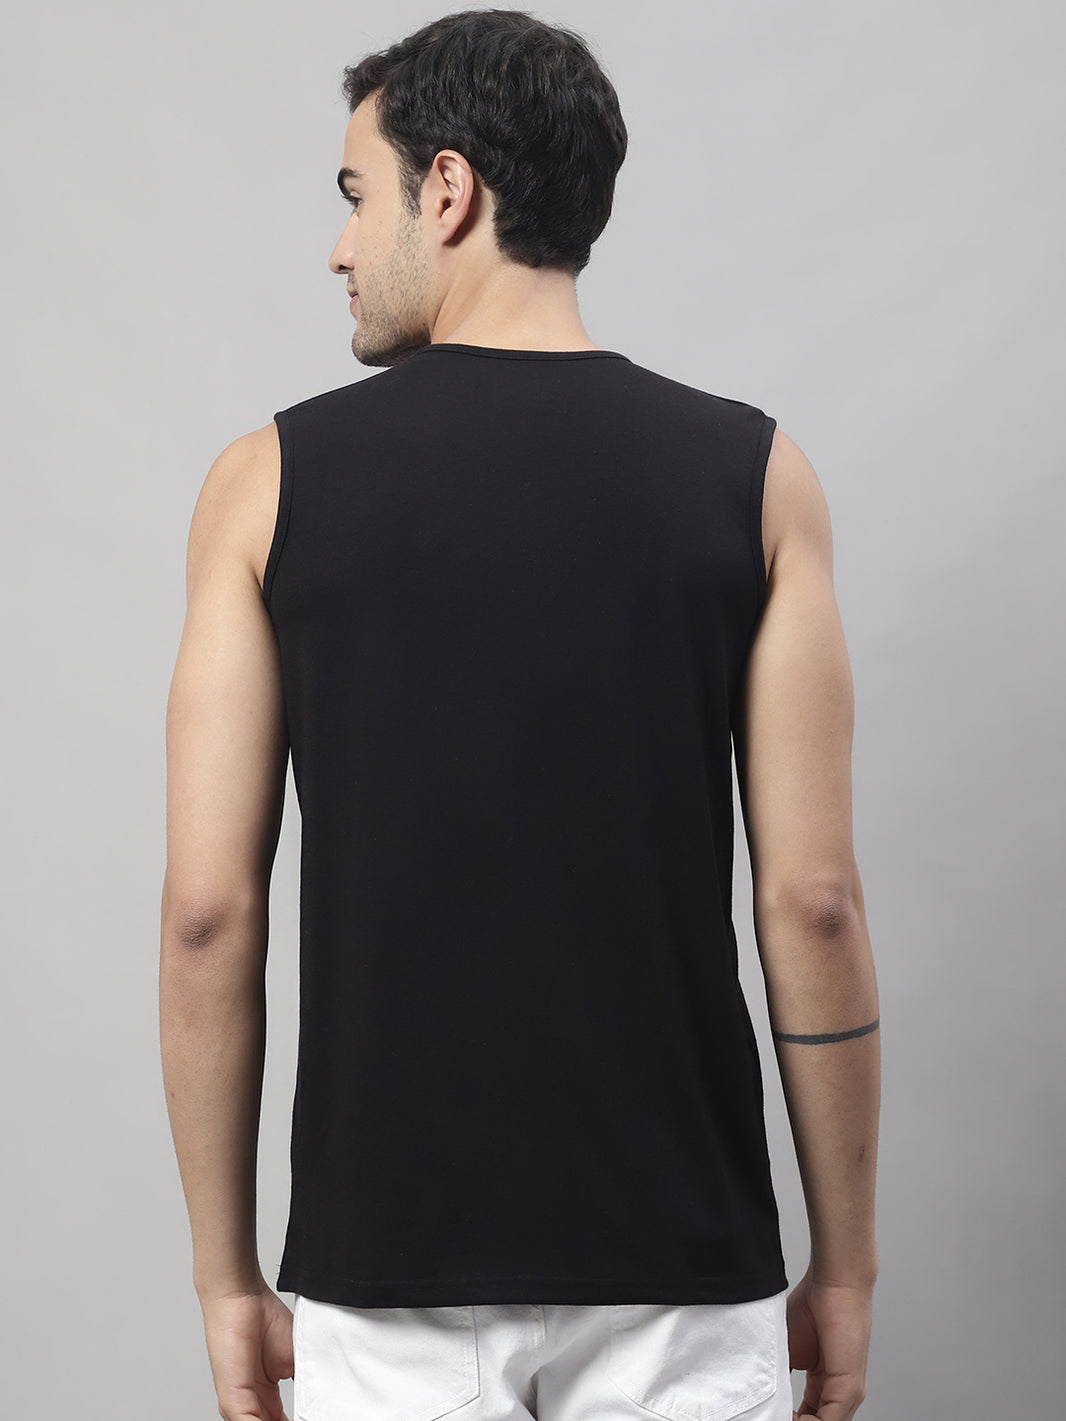 Vimal Jonney Regular Fit Cotton Solid Black Gym Vest for Men